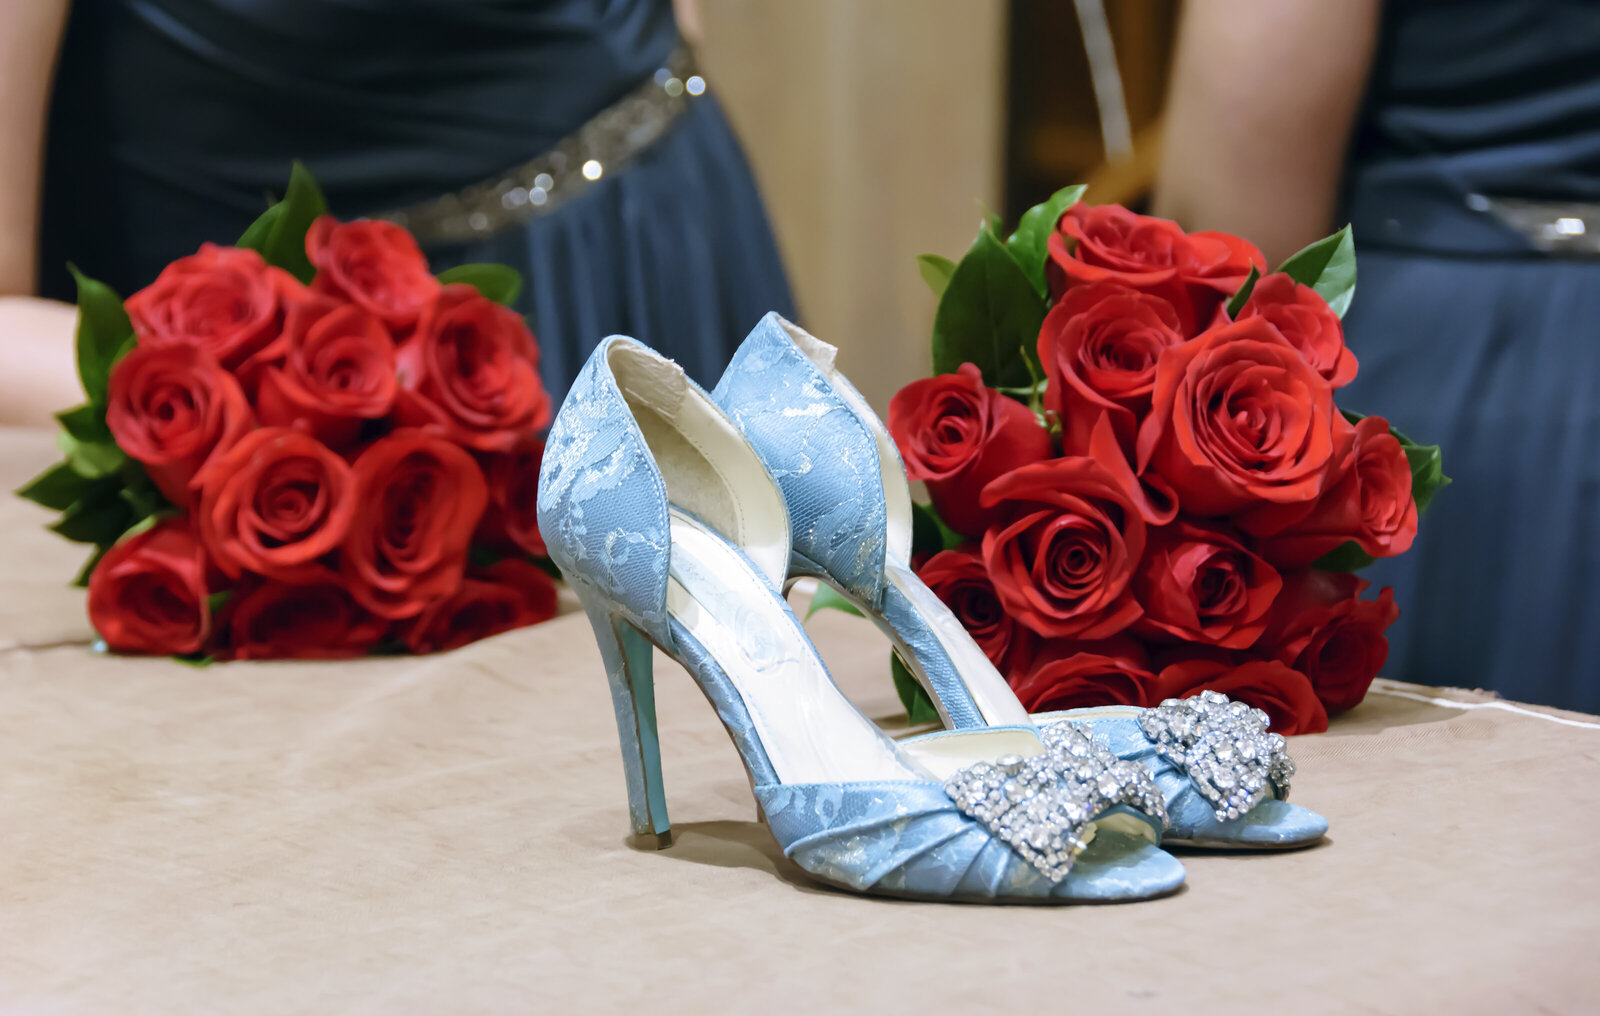 DSC_4077_Brides Shoes & Flowers